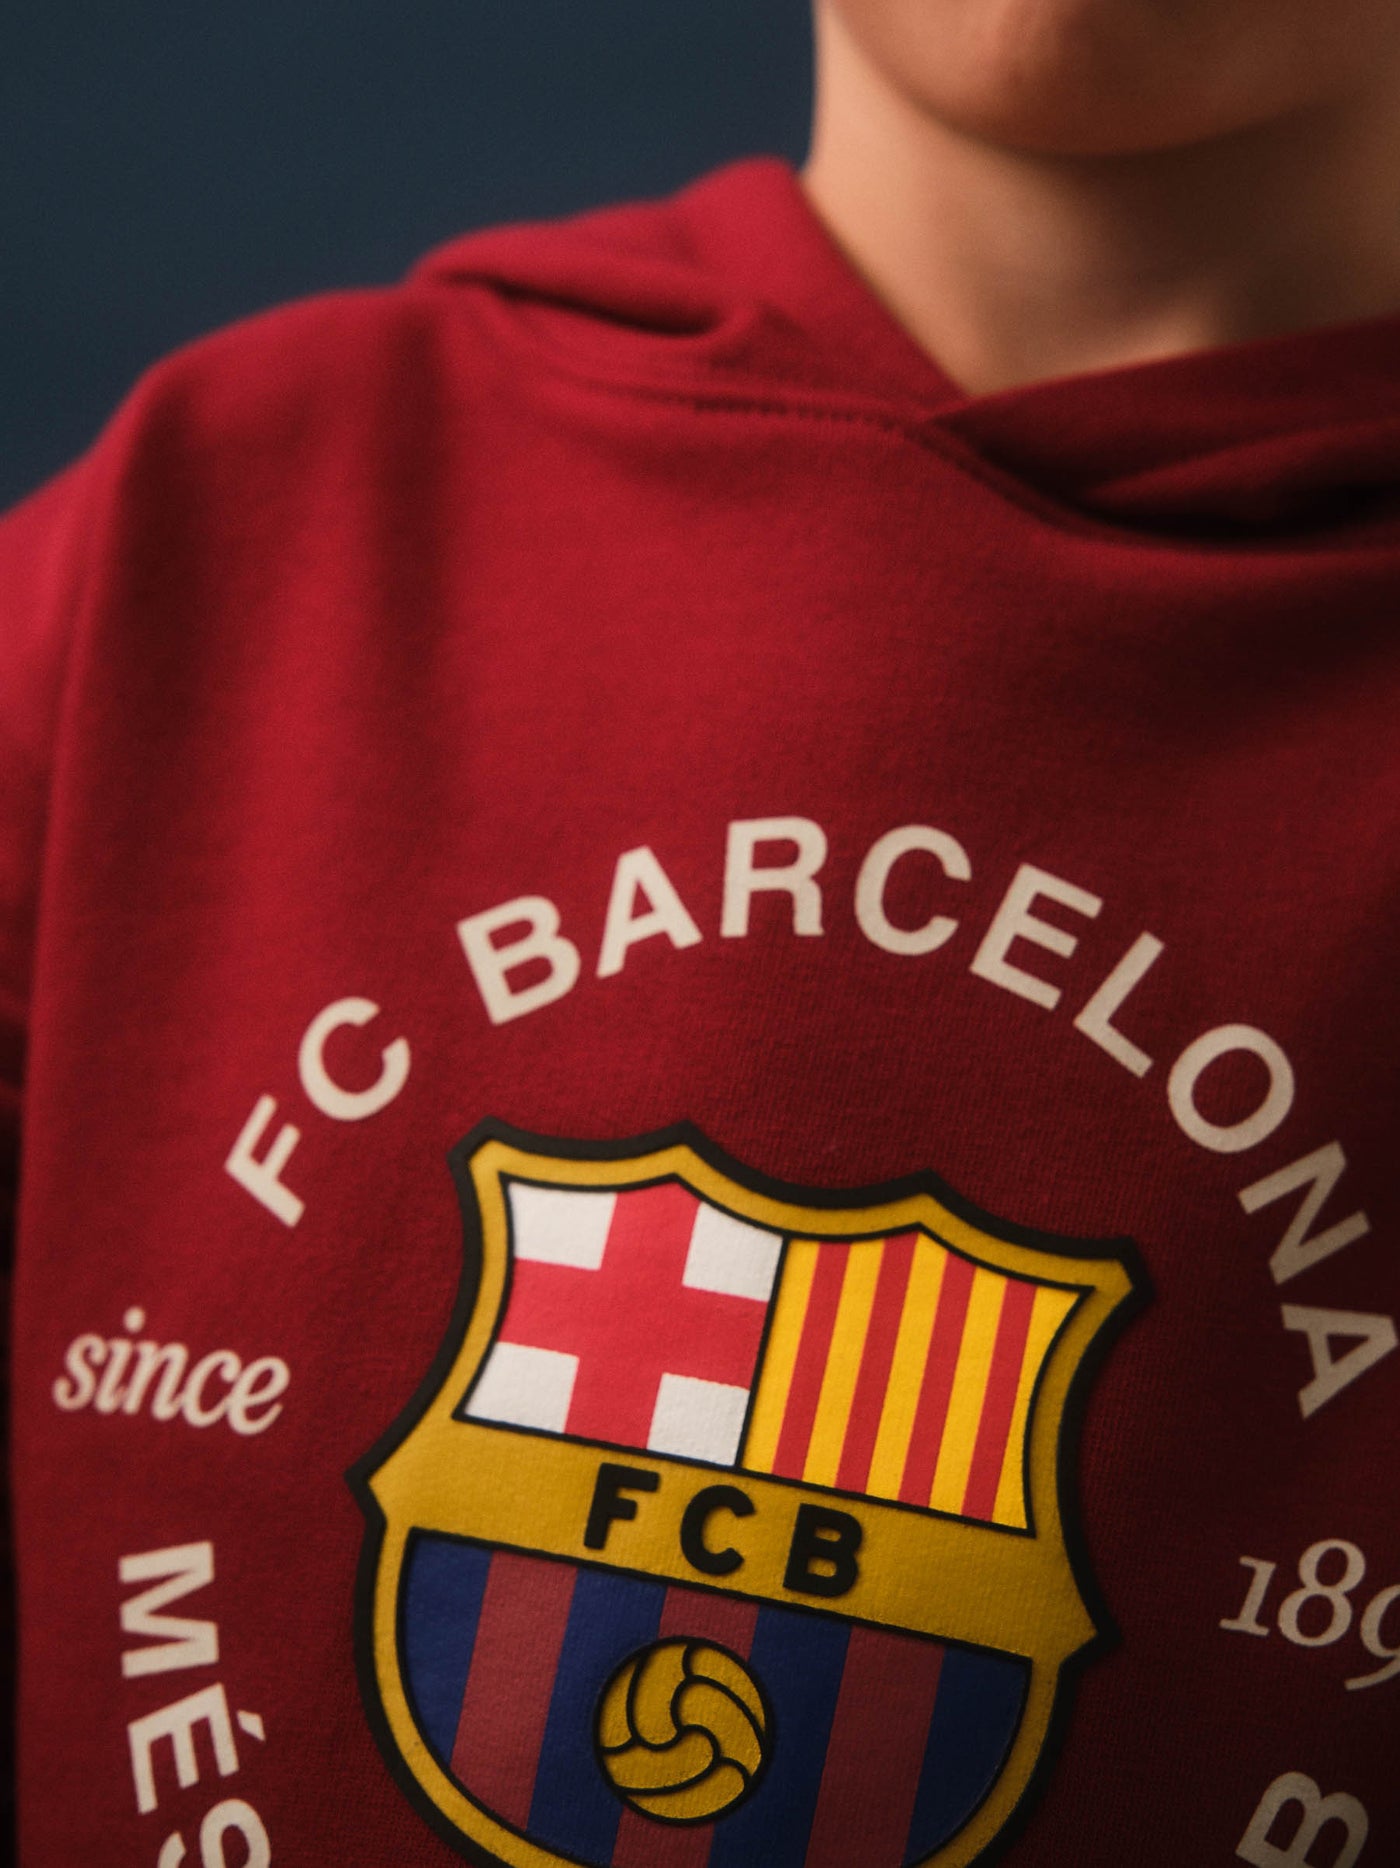 Roter Hoodie mit Barça-Emblem - Junior